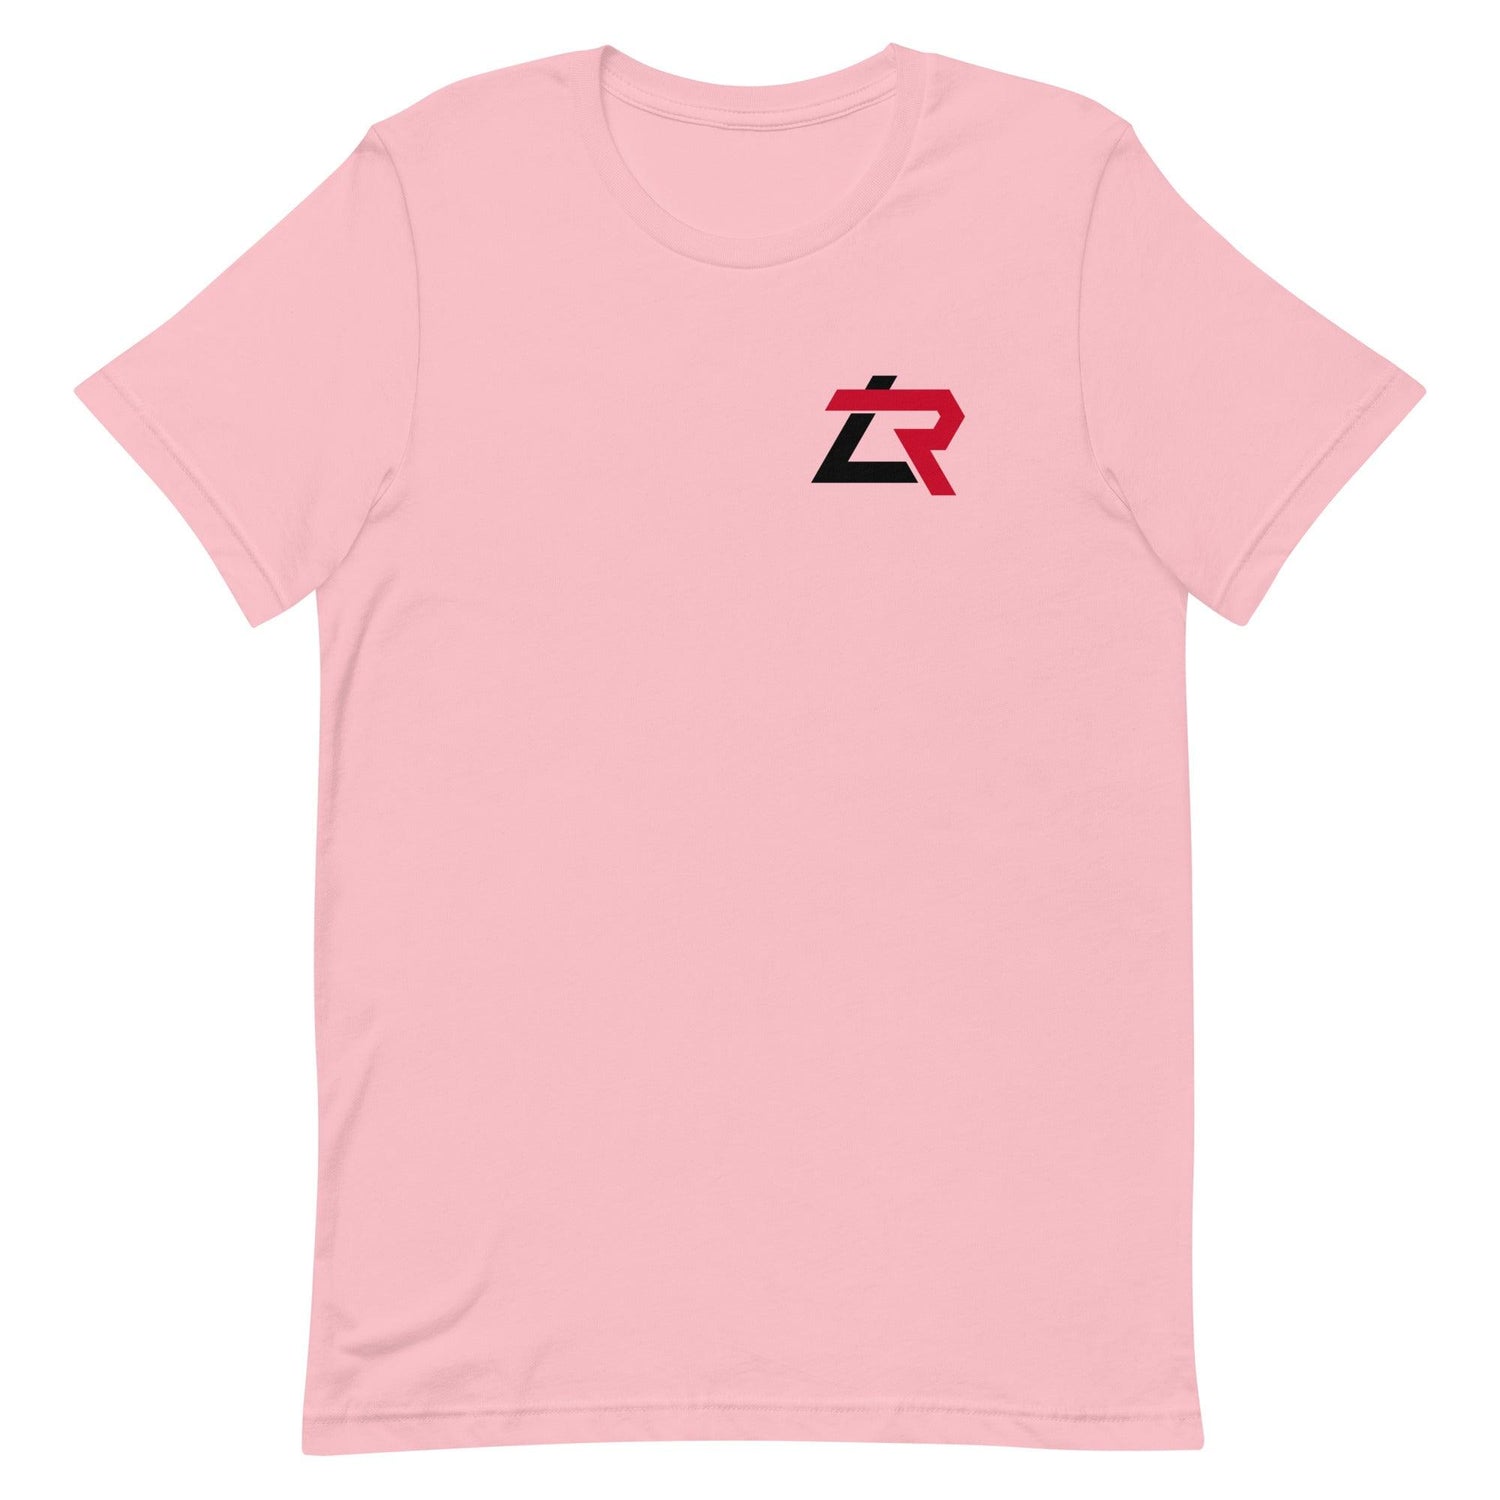 Lyon Richardson "LR" t-shirt - Fan Arch